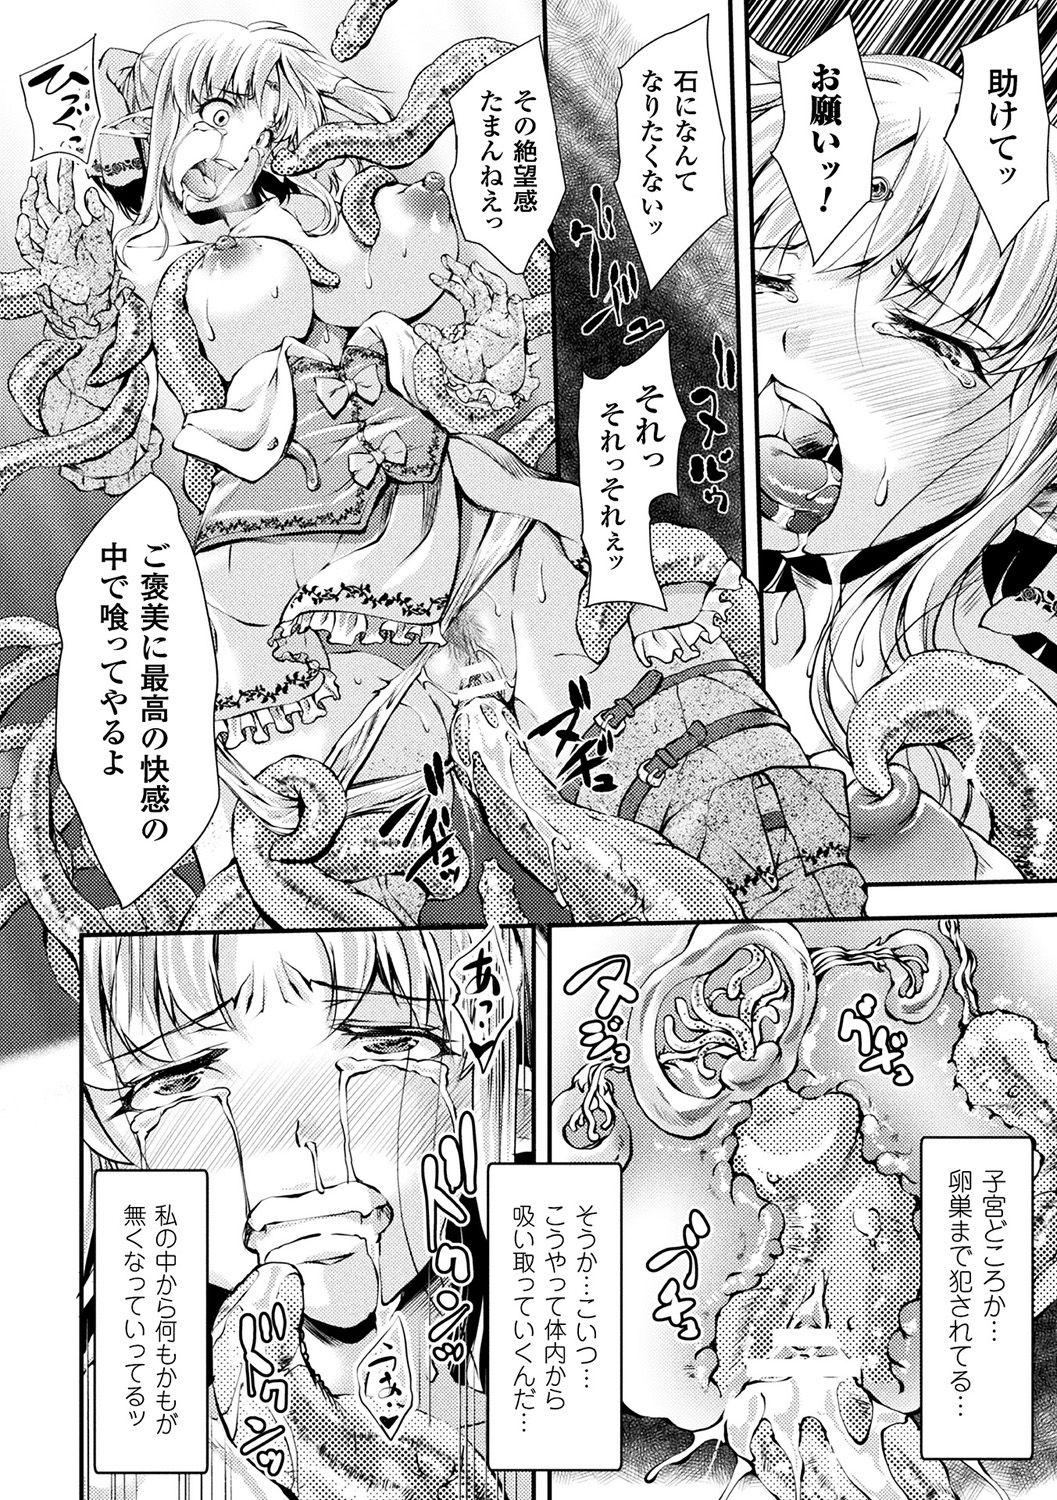 [Anthology] Bessatsu Comic Unreal Sekka END ~Zetsubou no Naka de Sekizou e to Kaerareru Shoujo-tachi~ Vol. 2 [Digital] 30